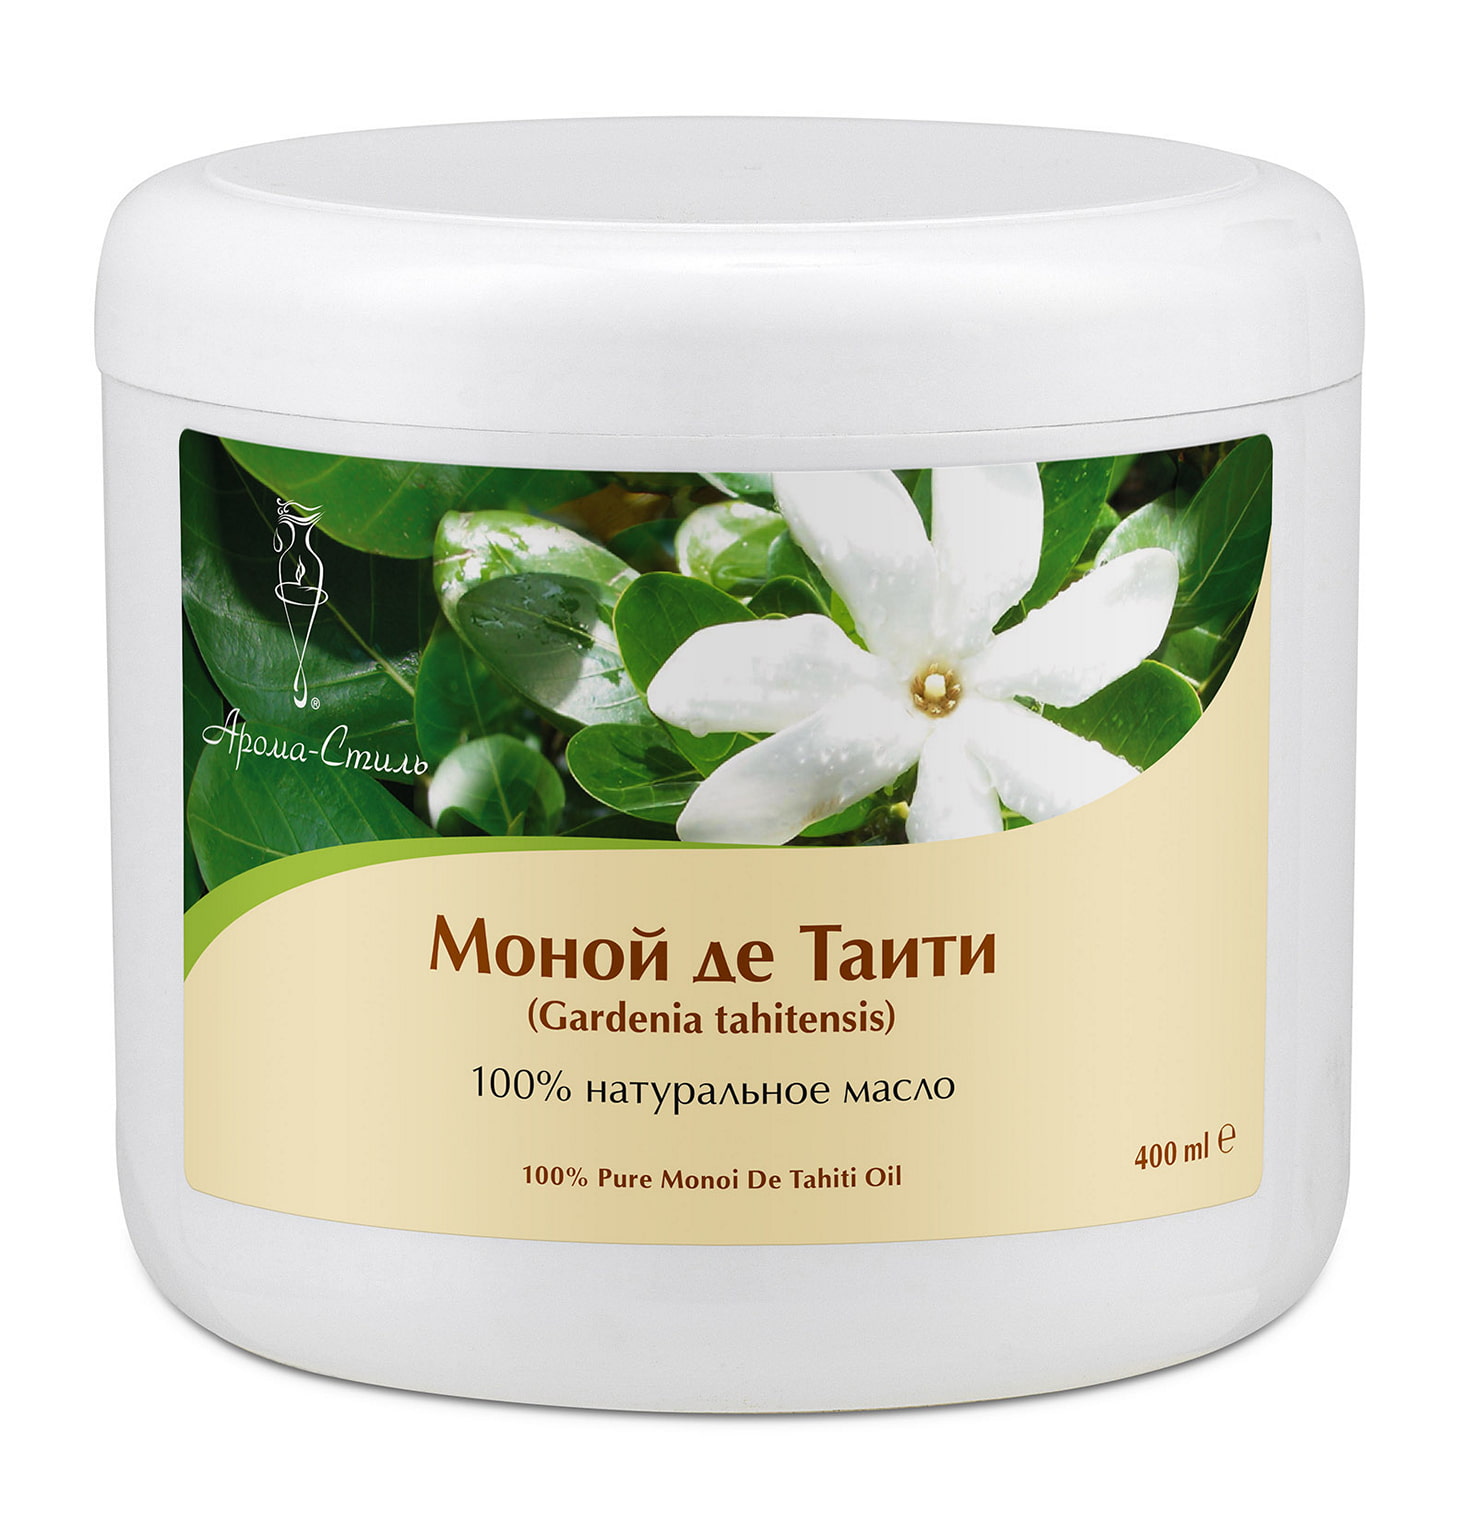 Моной де Таити масло массажное растительное - 400 мл